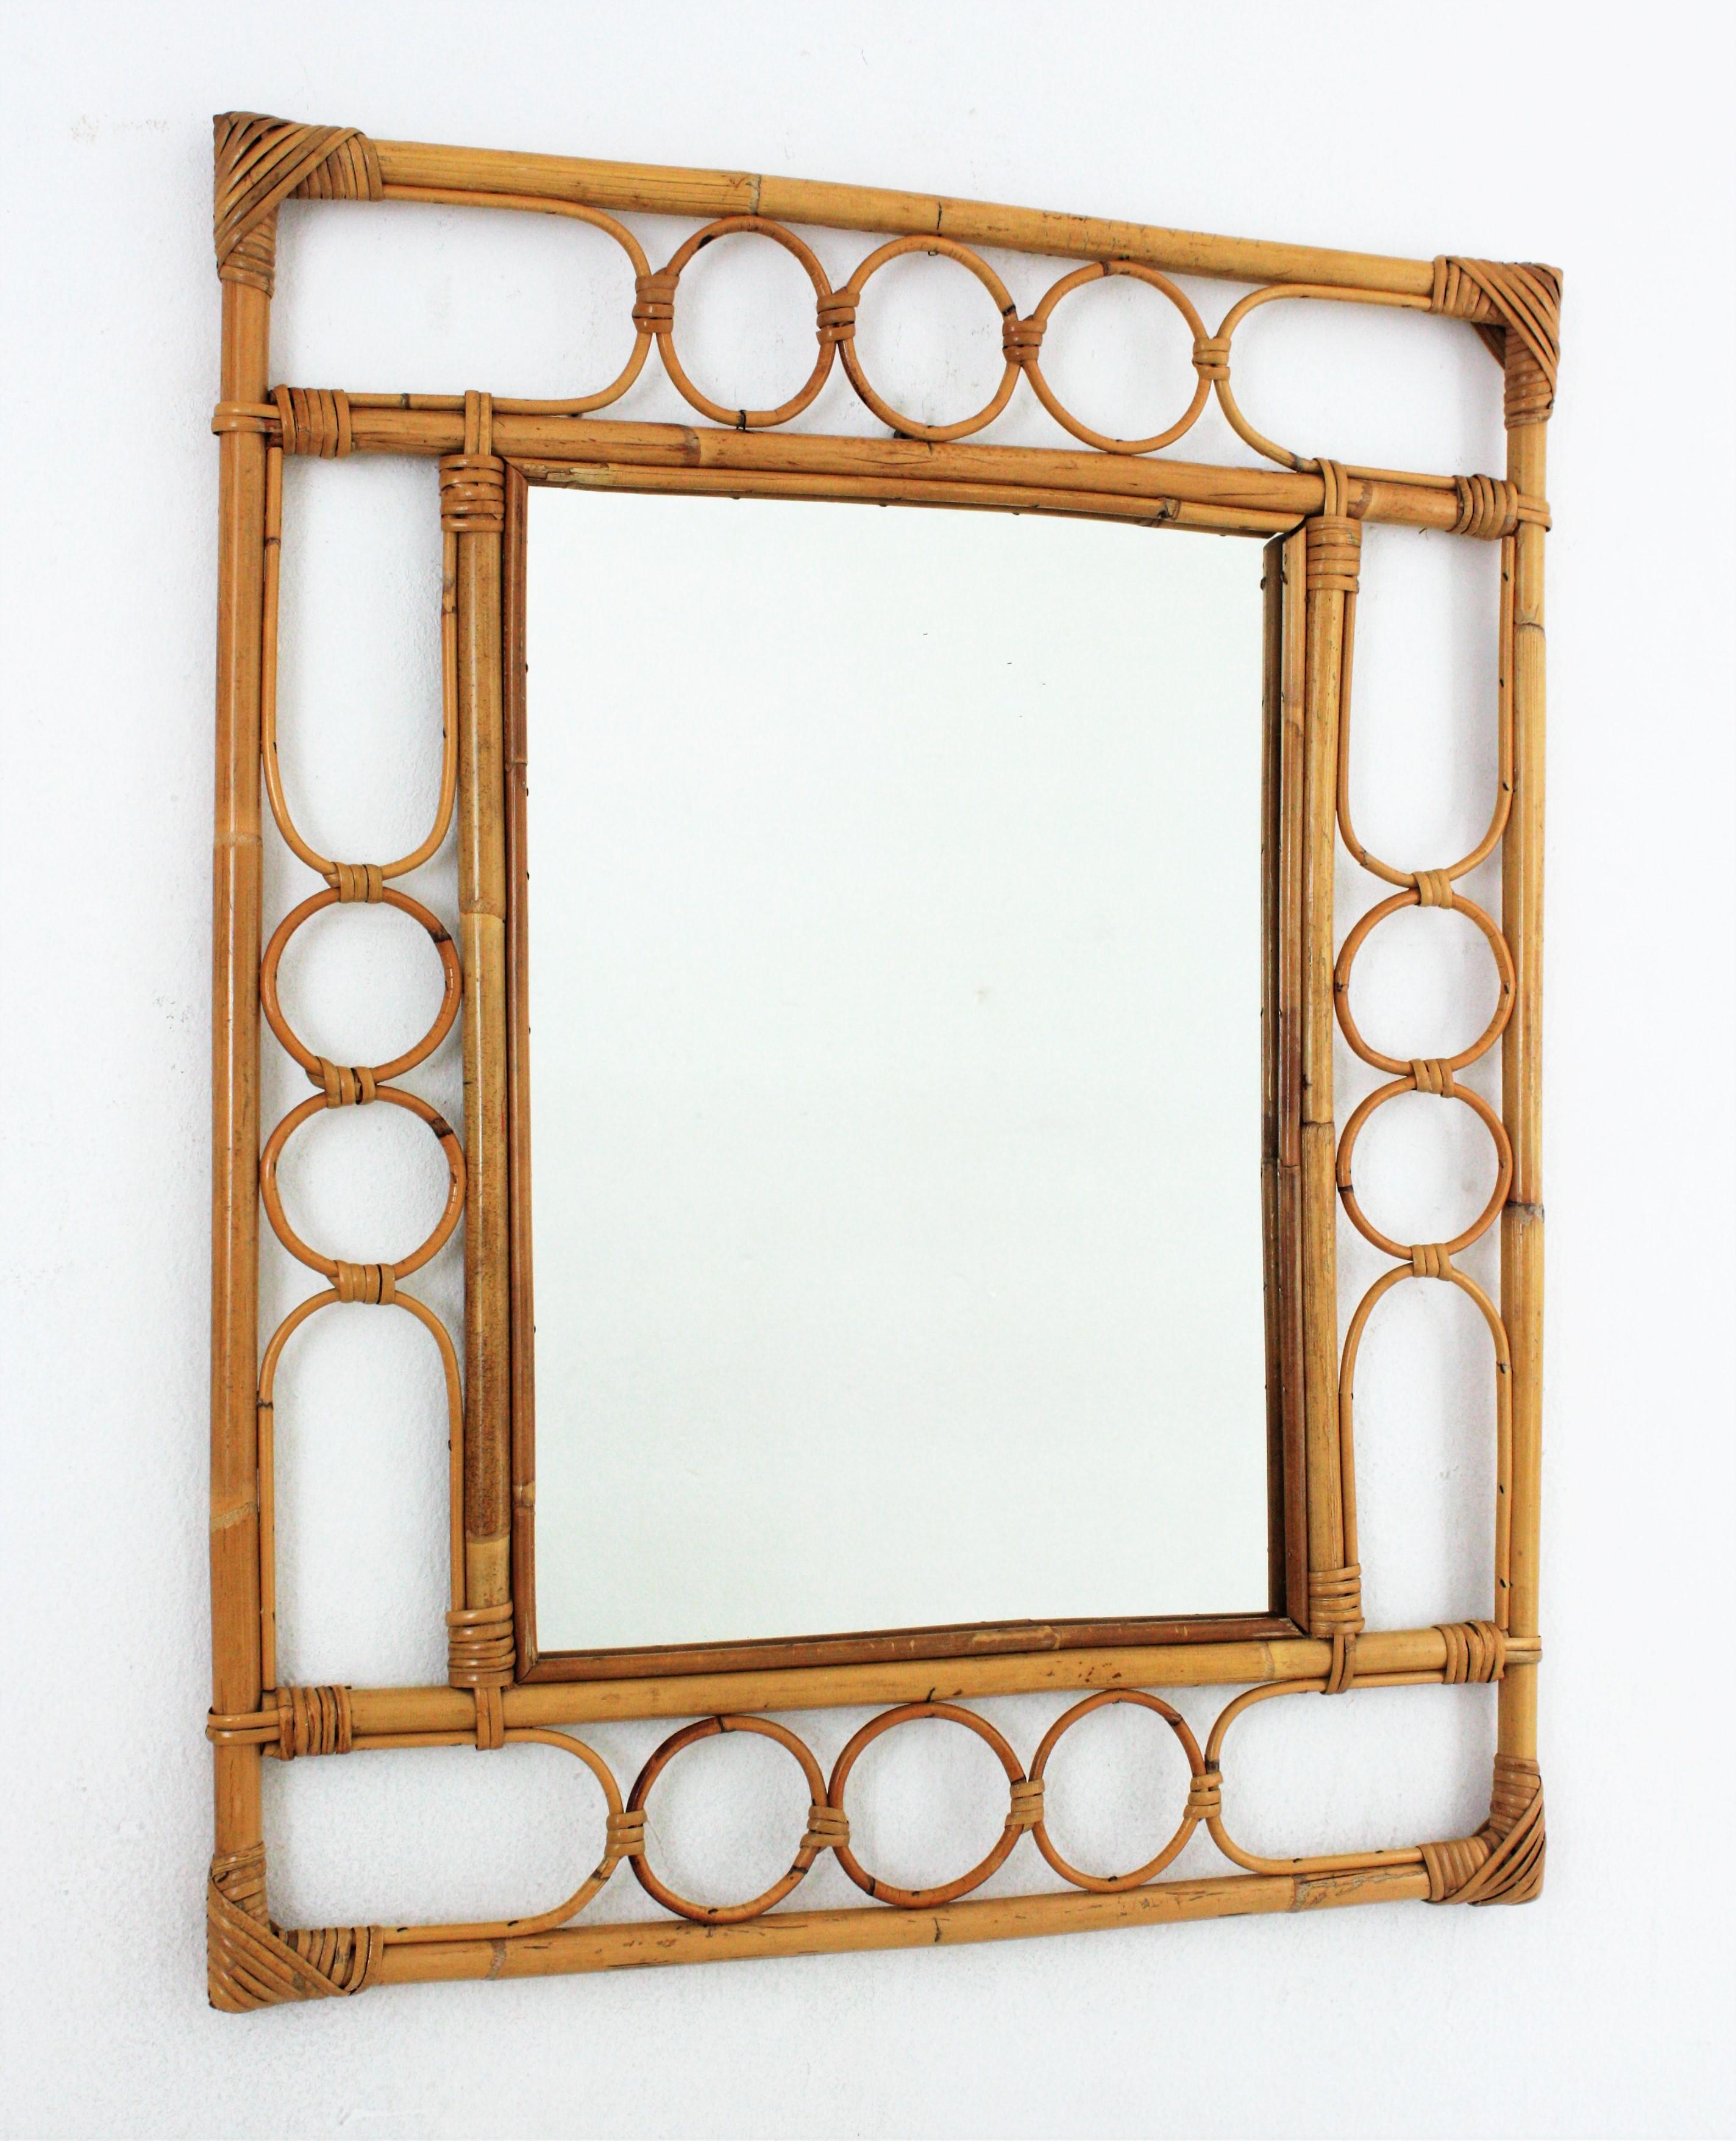 Miroir en bambou et rotin de style Franco Albini, de style moderne du milieu du siècle, fabriqué à la main. Italie, années 1960.
Ce miroir présente un double cadre rectangulaire en bambou avec une décoration géométrique en rotin entre les cannes de